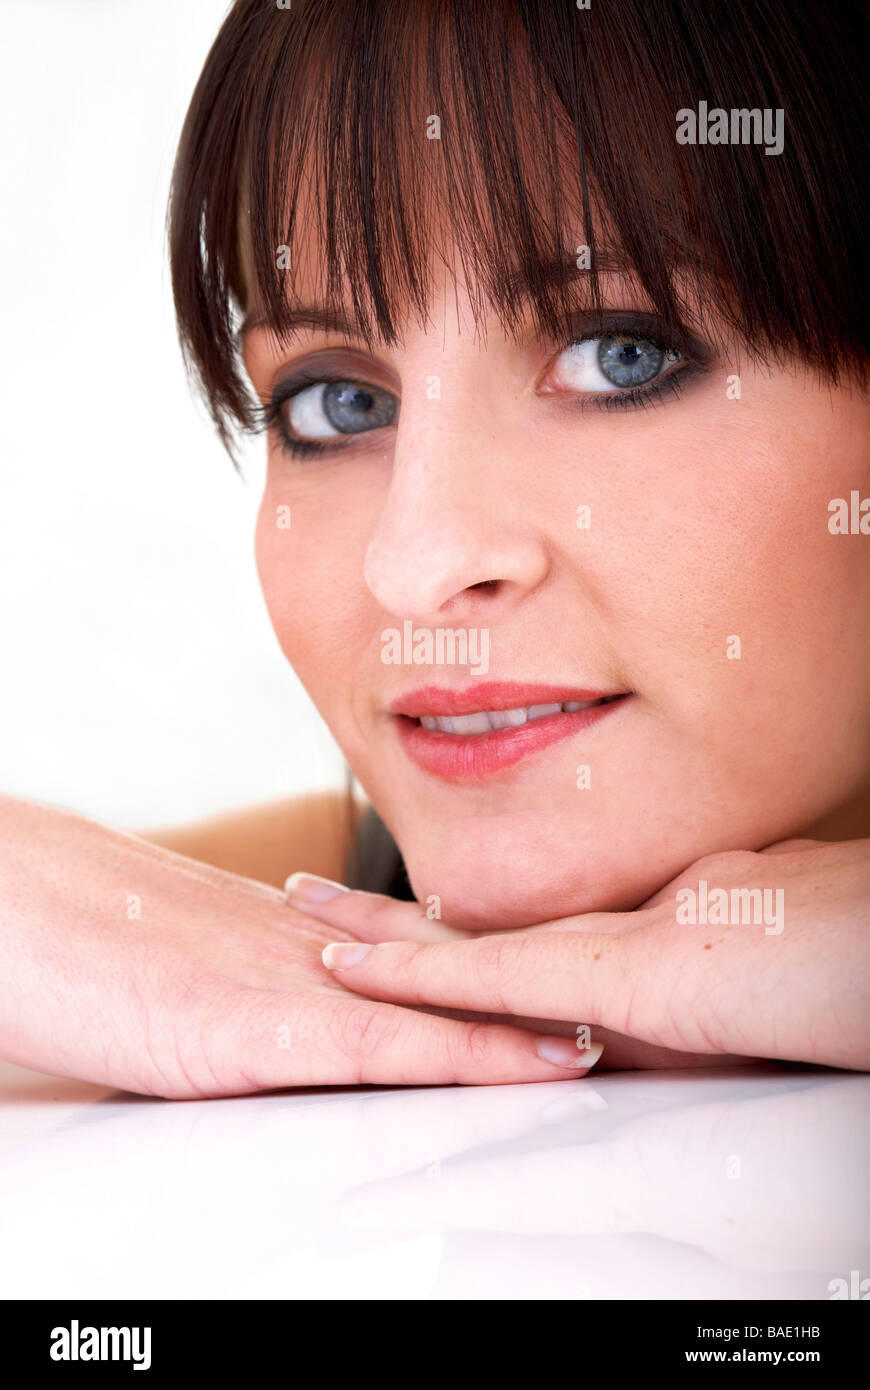 Lässige Frau Porträt auf dem Boden lächelnd - auf einem weißen Hintergrund isoliert Stockfoto